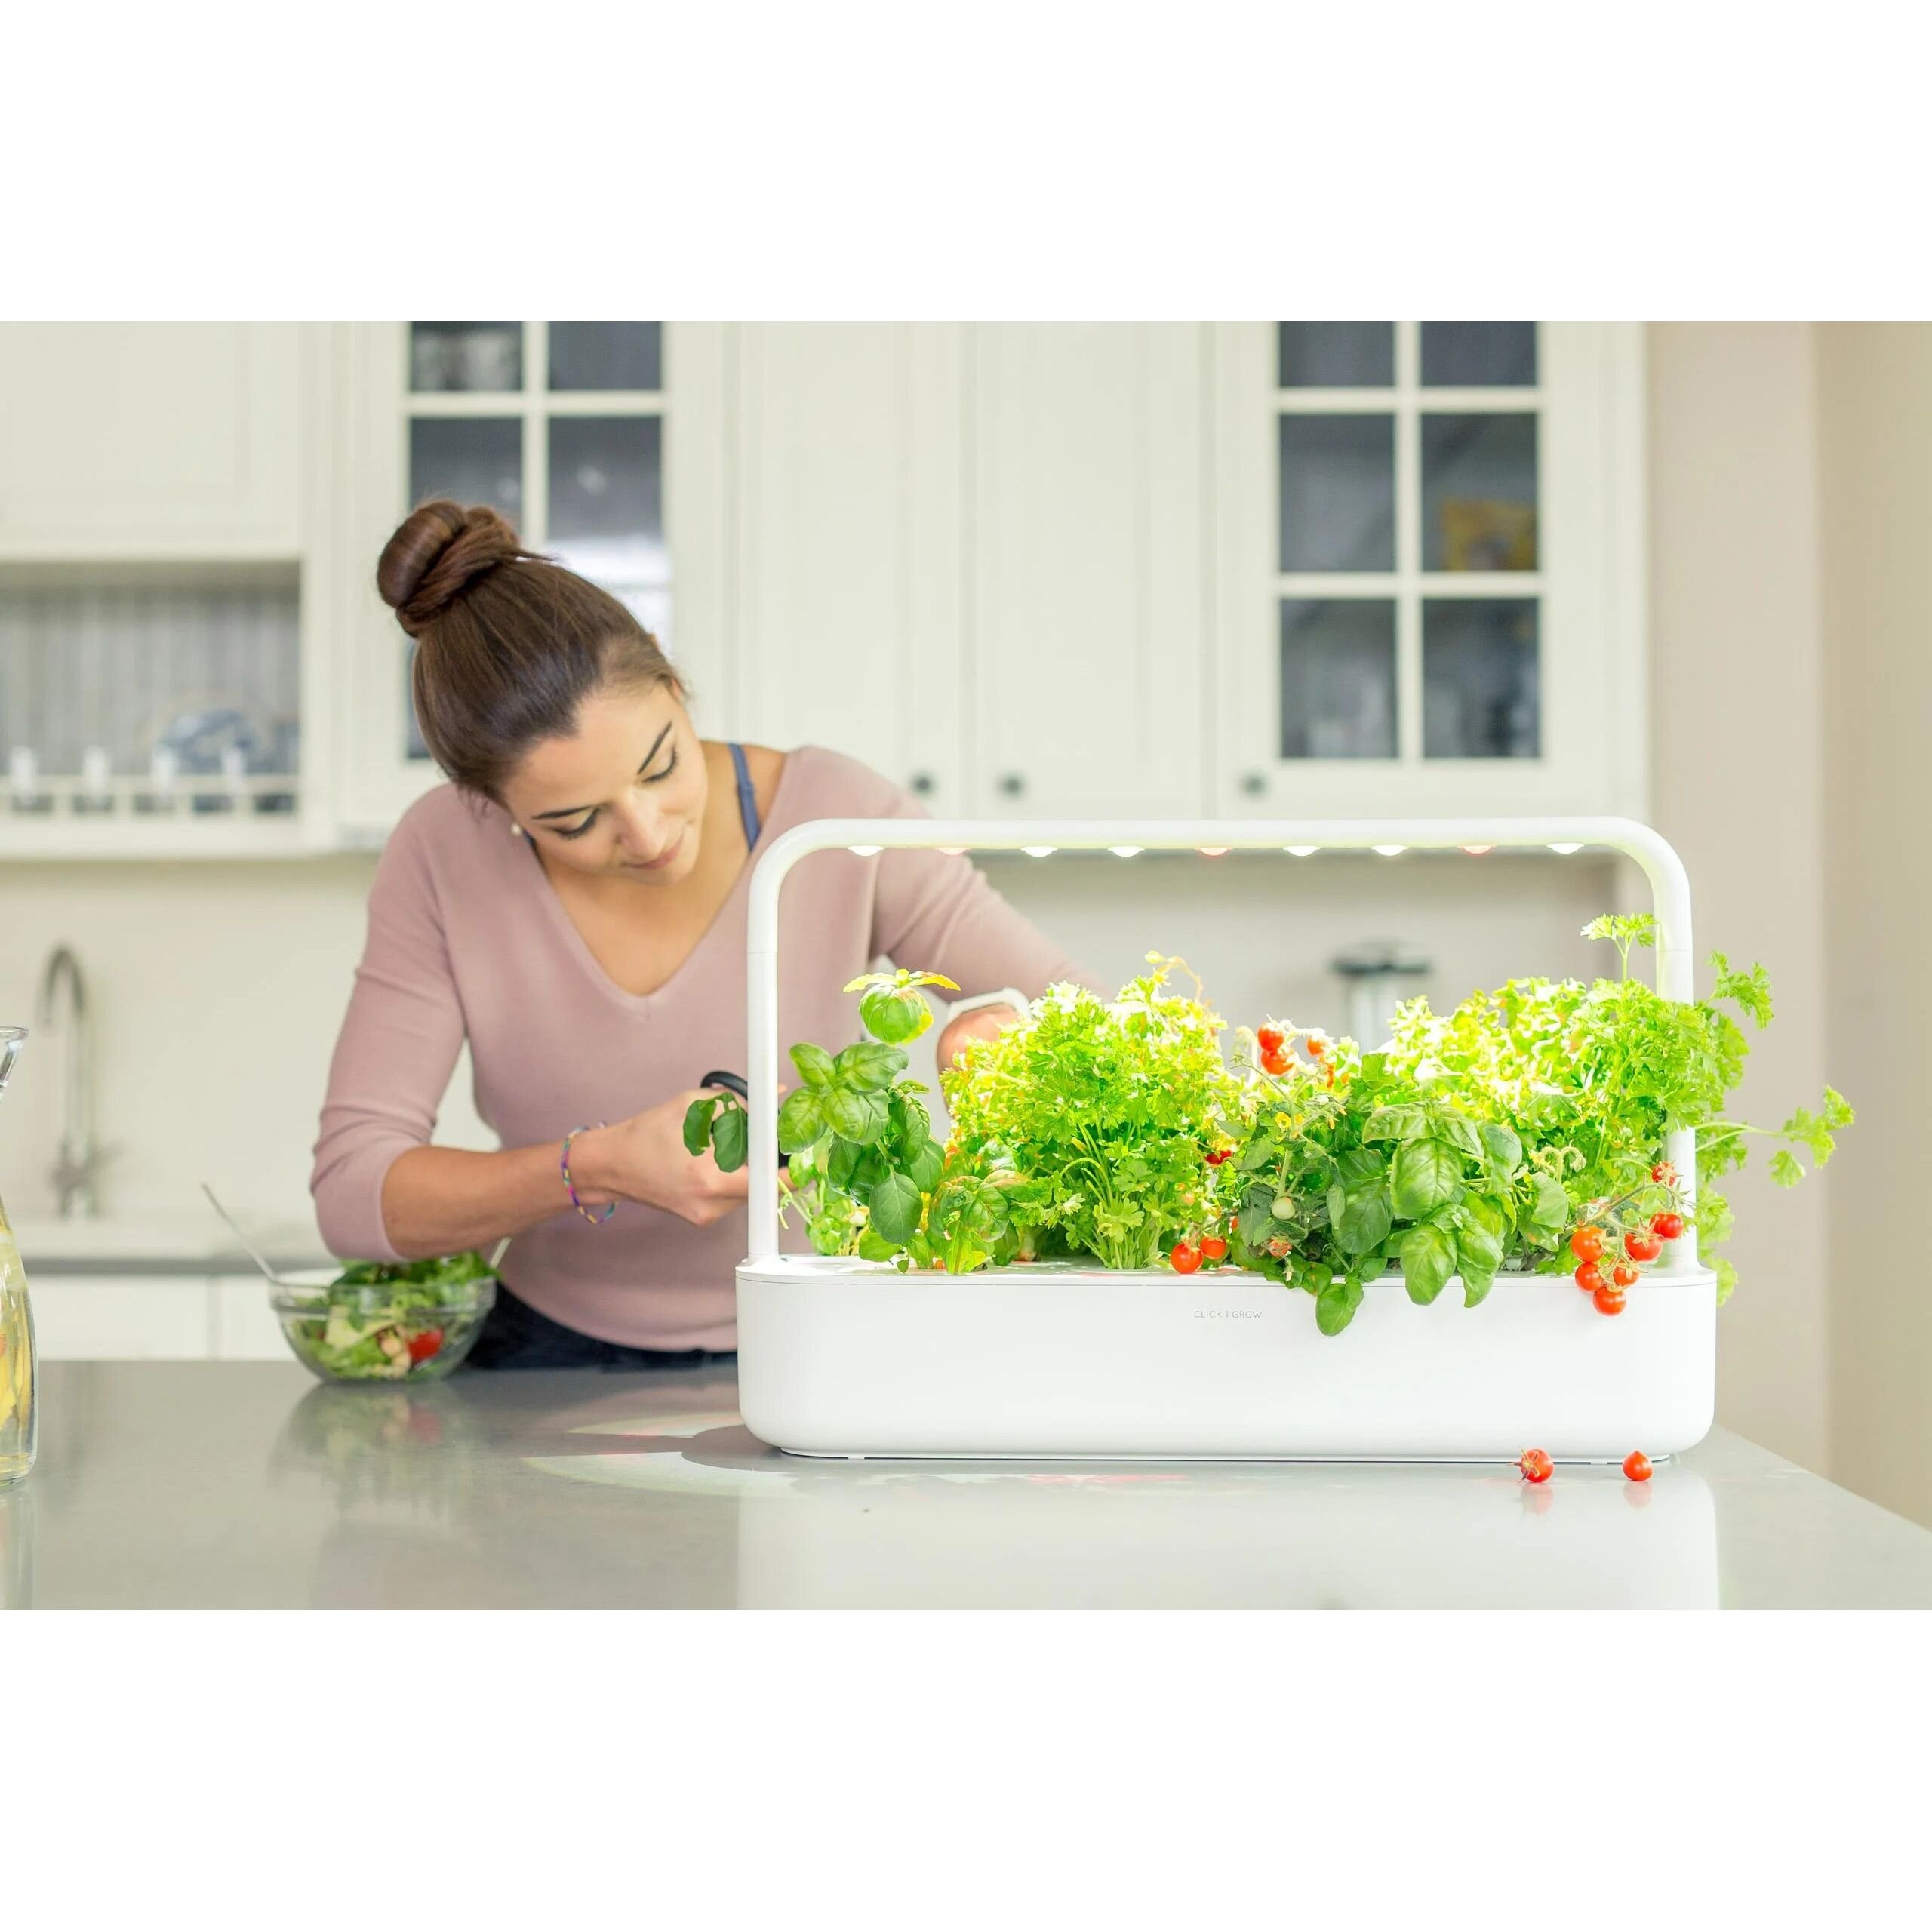 Стартовый набор для выращивания эко-продуктов Click & Grow Smart Garden 9, бежевый (8875 SG9) - фото 7